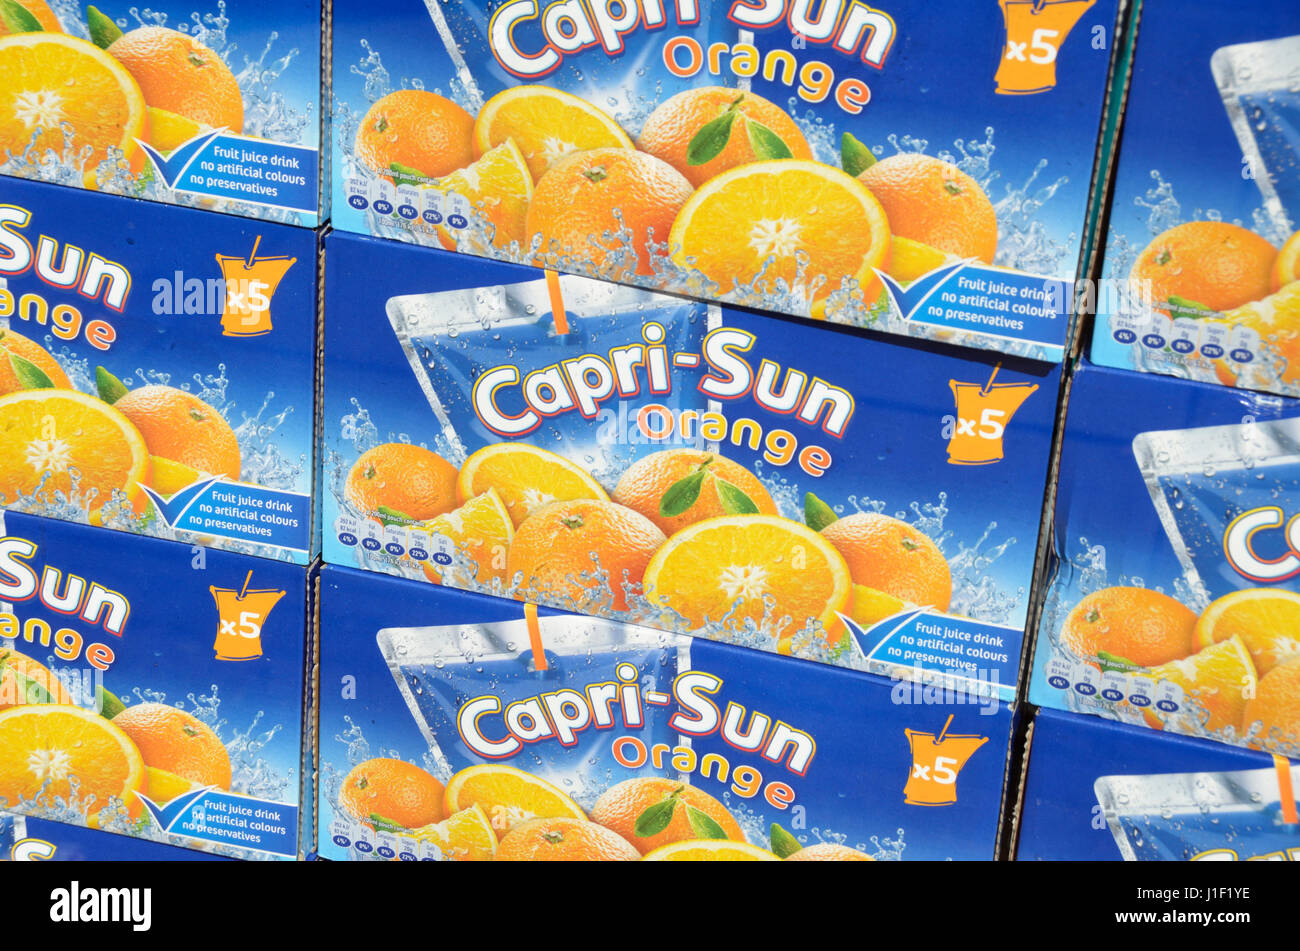 Capri sun cartons hi-res stock photography and images - Alamy